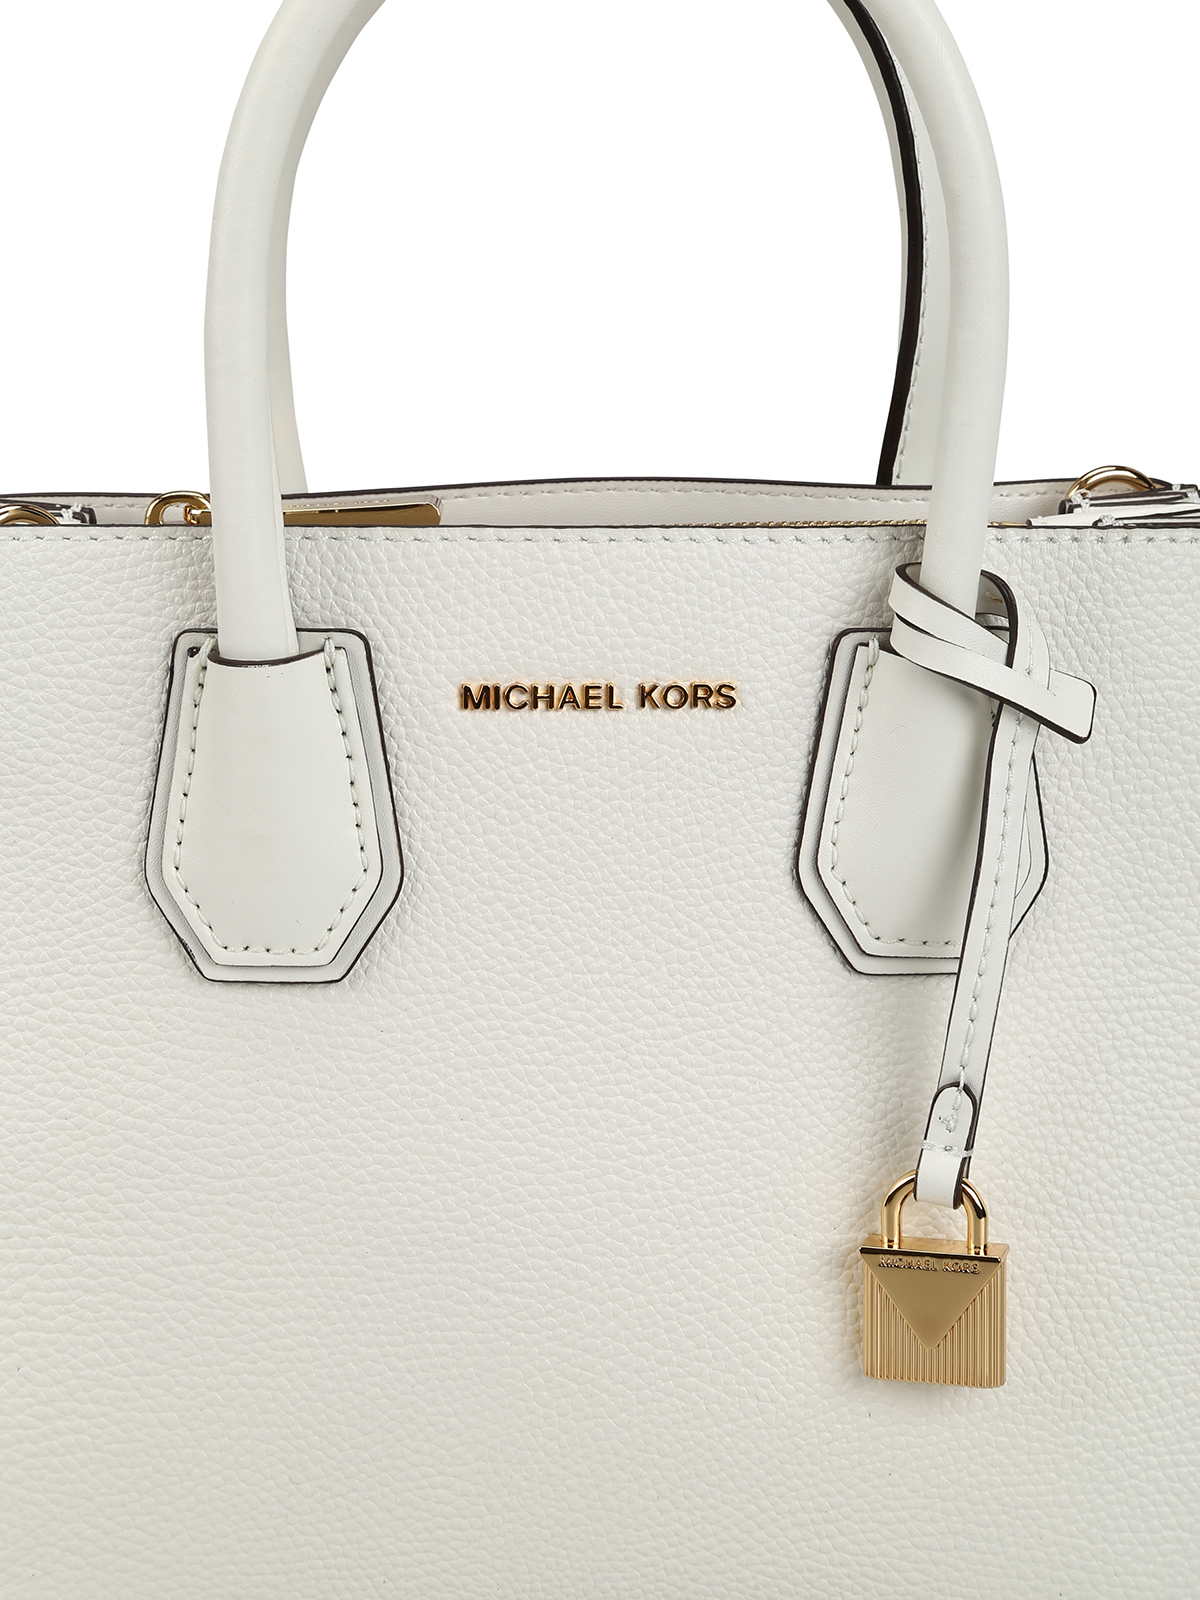 Cross body bags Michael Kors - Mercer M white leather bag - 30F8GM9M2T085